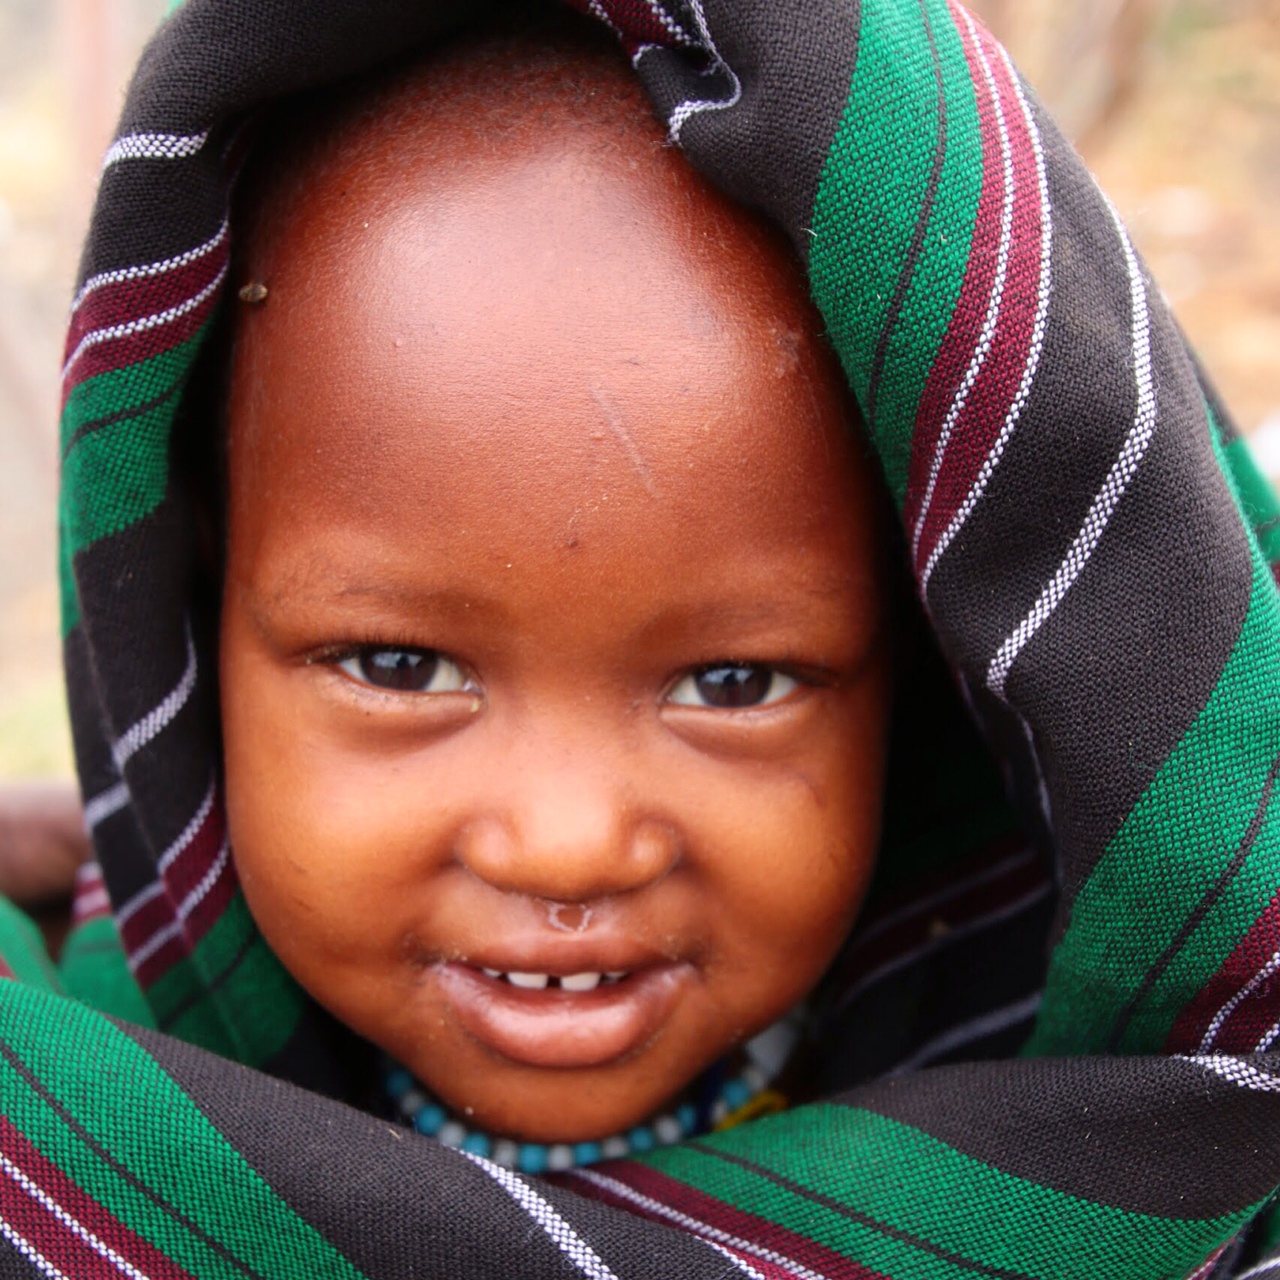 My little Maasai brother Naayo